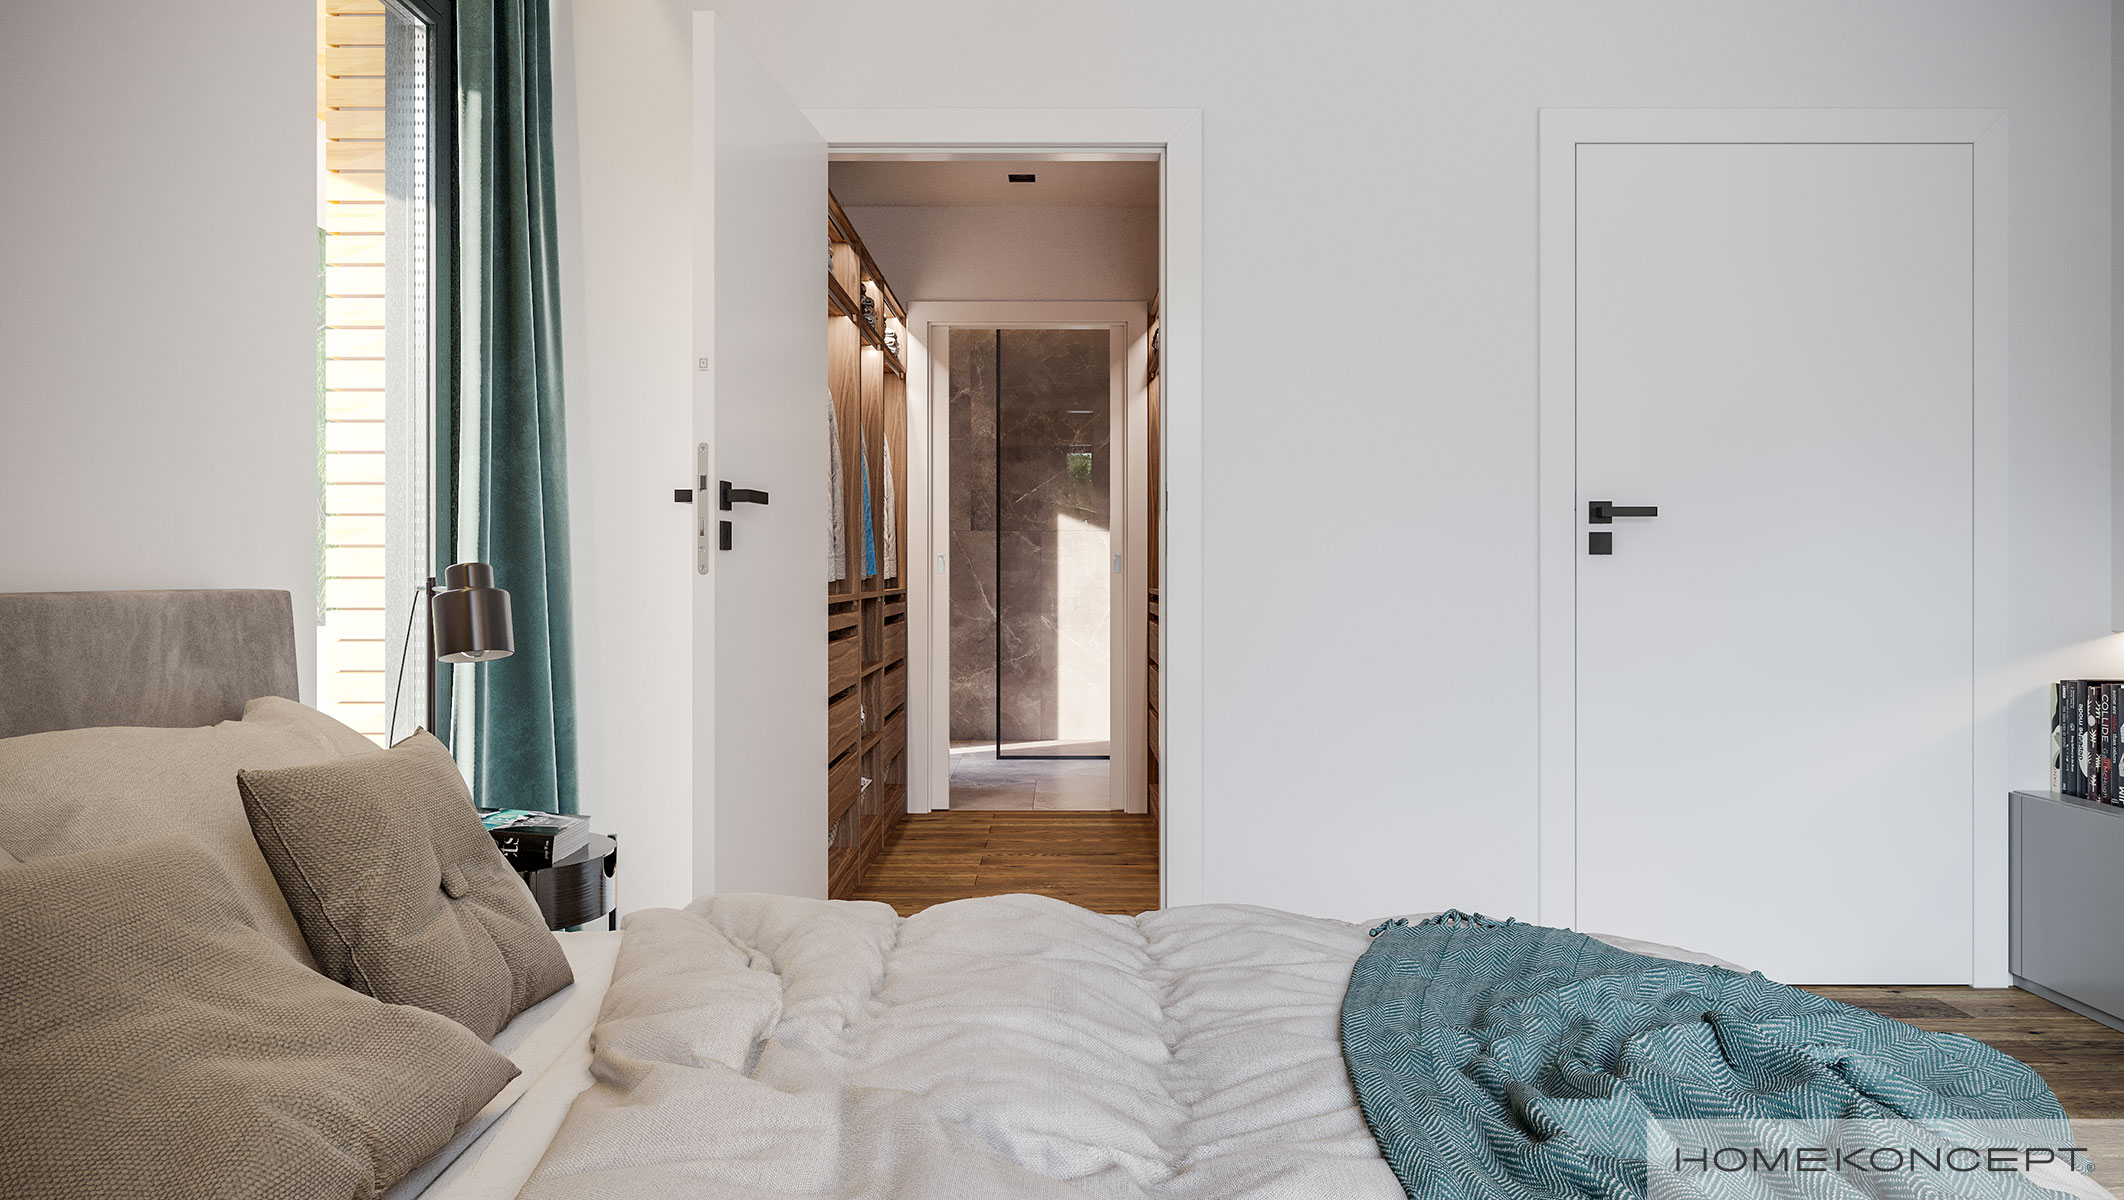 Nowoczesna aranżacja w jasnych kolorach – nastrojowe master bedroom z gotowego projektu domu HOMEKONCEPT 73